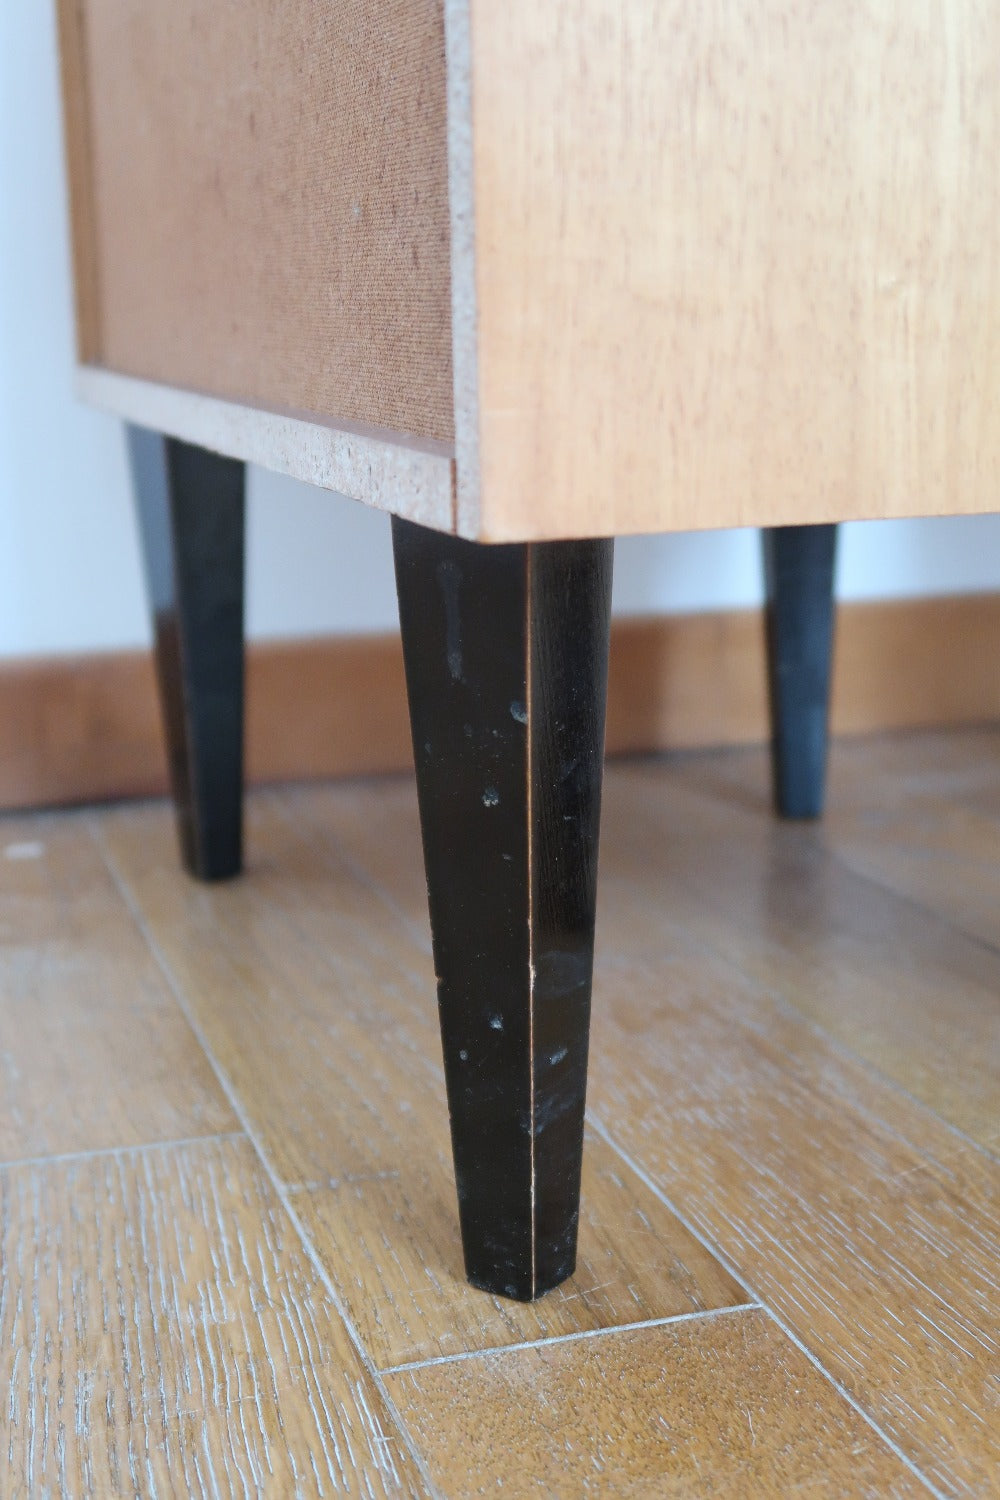 paire 2 table chevet meuble appoint vintage scandinave danois bois pieds compas